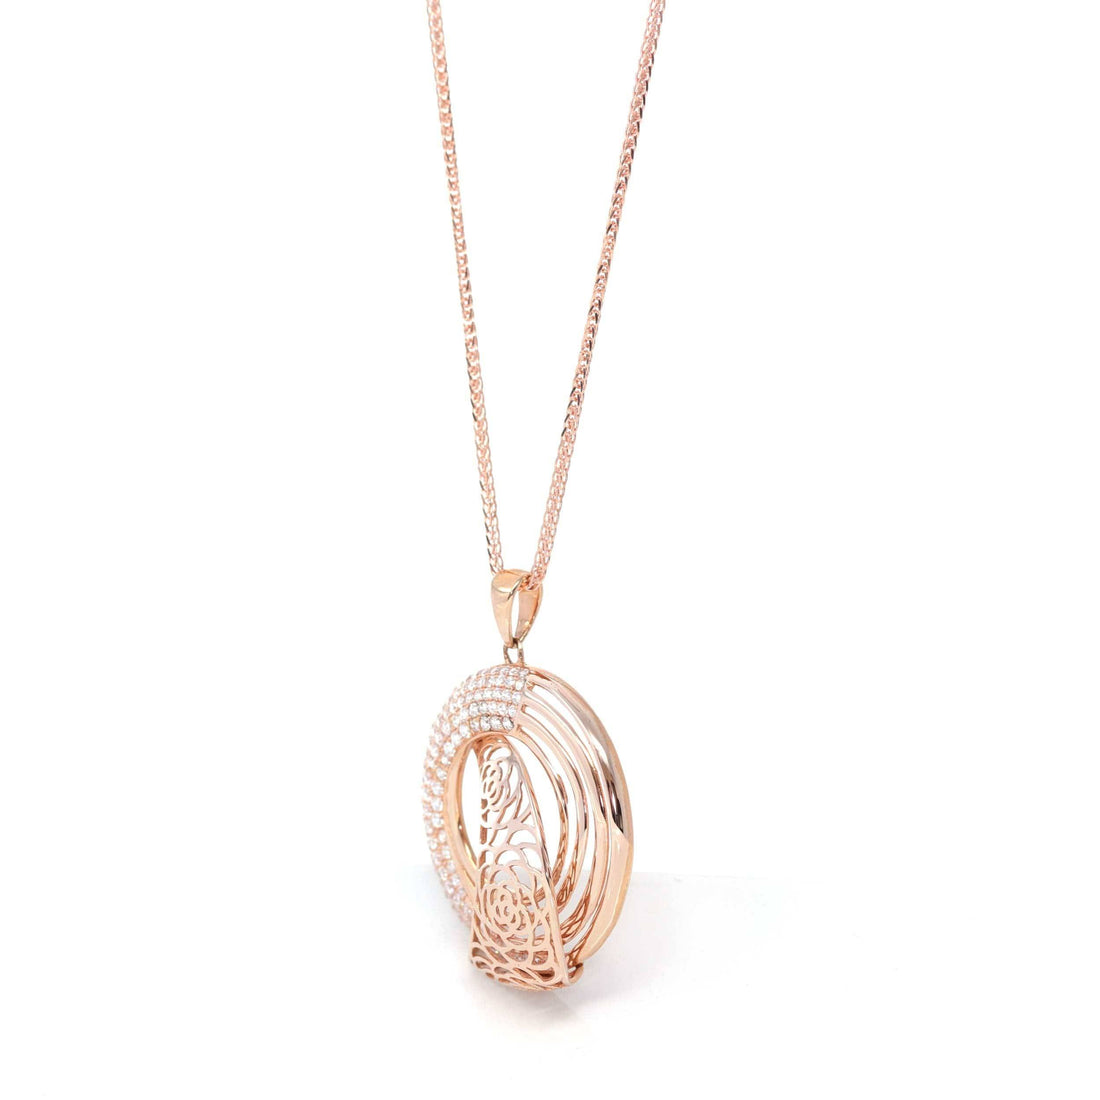 Baikalla Jewelry gemstone jewelry 18K Rose Gold "As You Wish" Necklace with Zircon